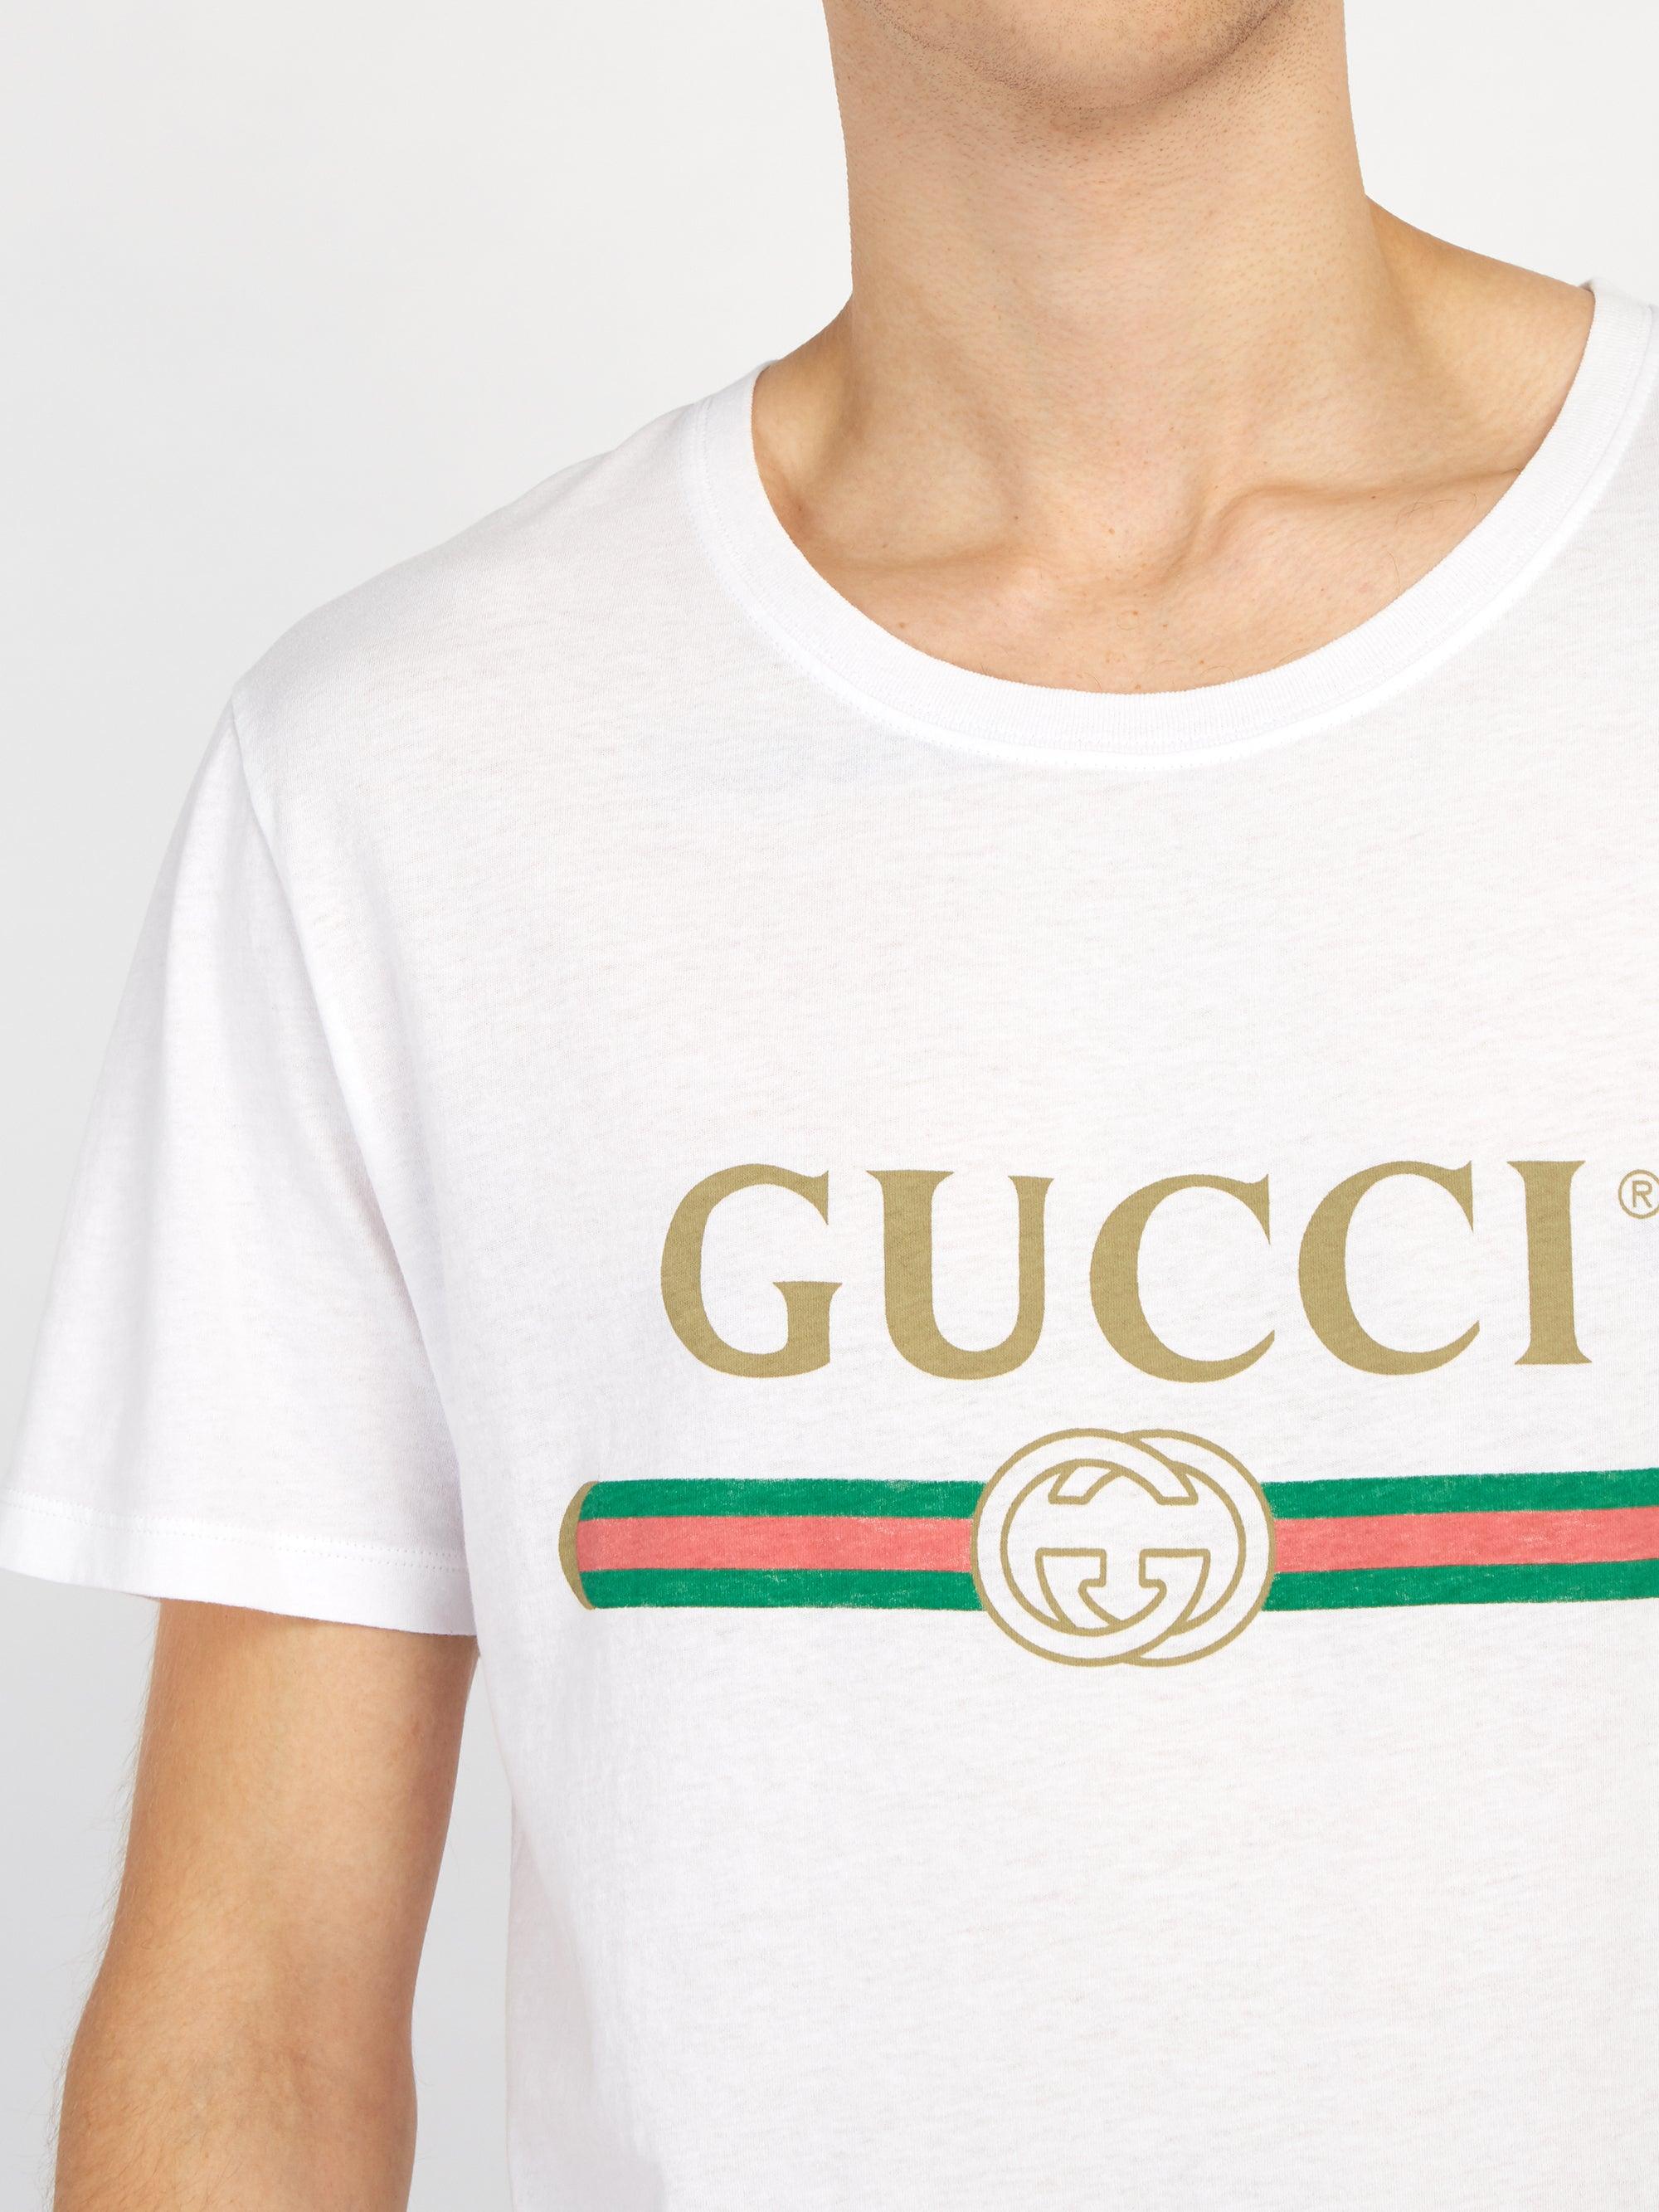 Gucci コットン 【公式】 (グッチ) ロゴ ウォッシュドオーバーサイズ T 